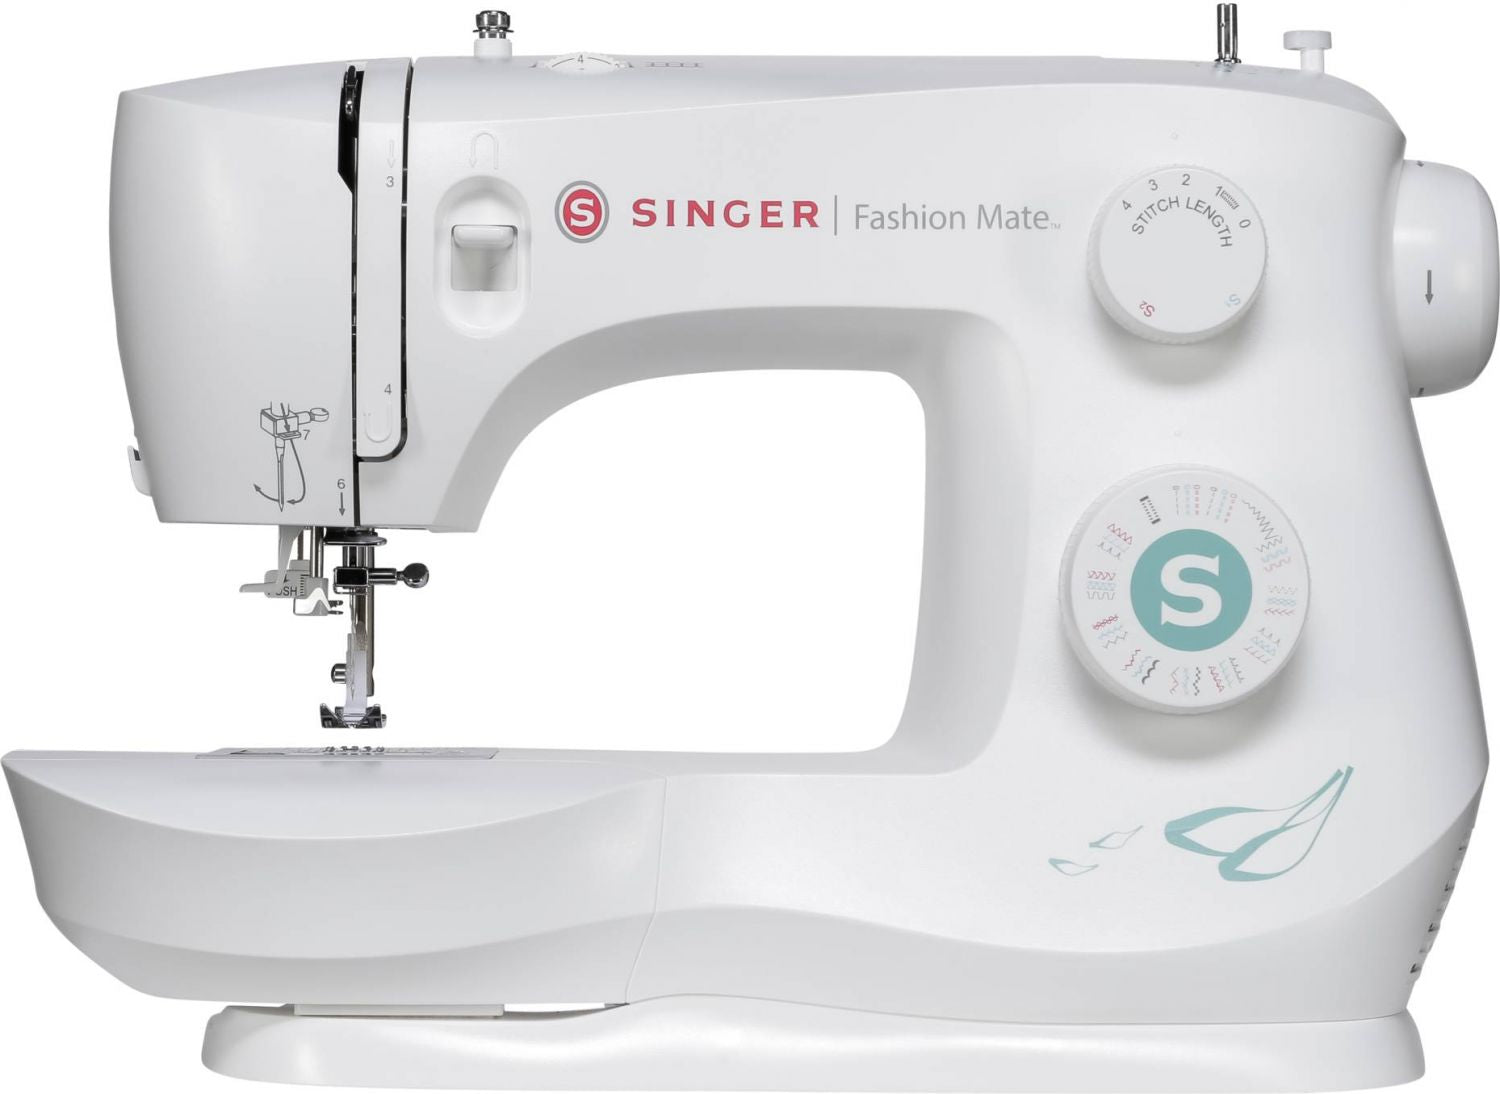 Singer 3337 Fashion Mate Sewing Machine